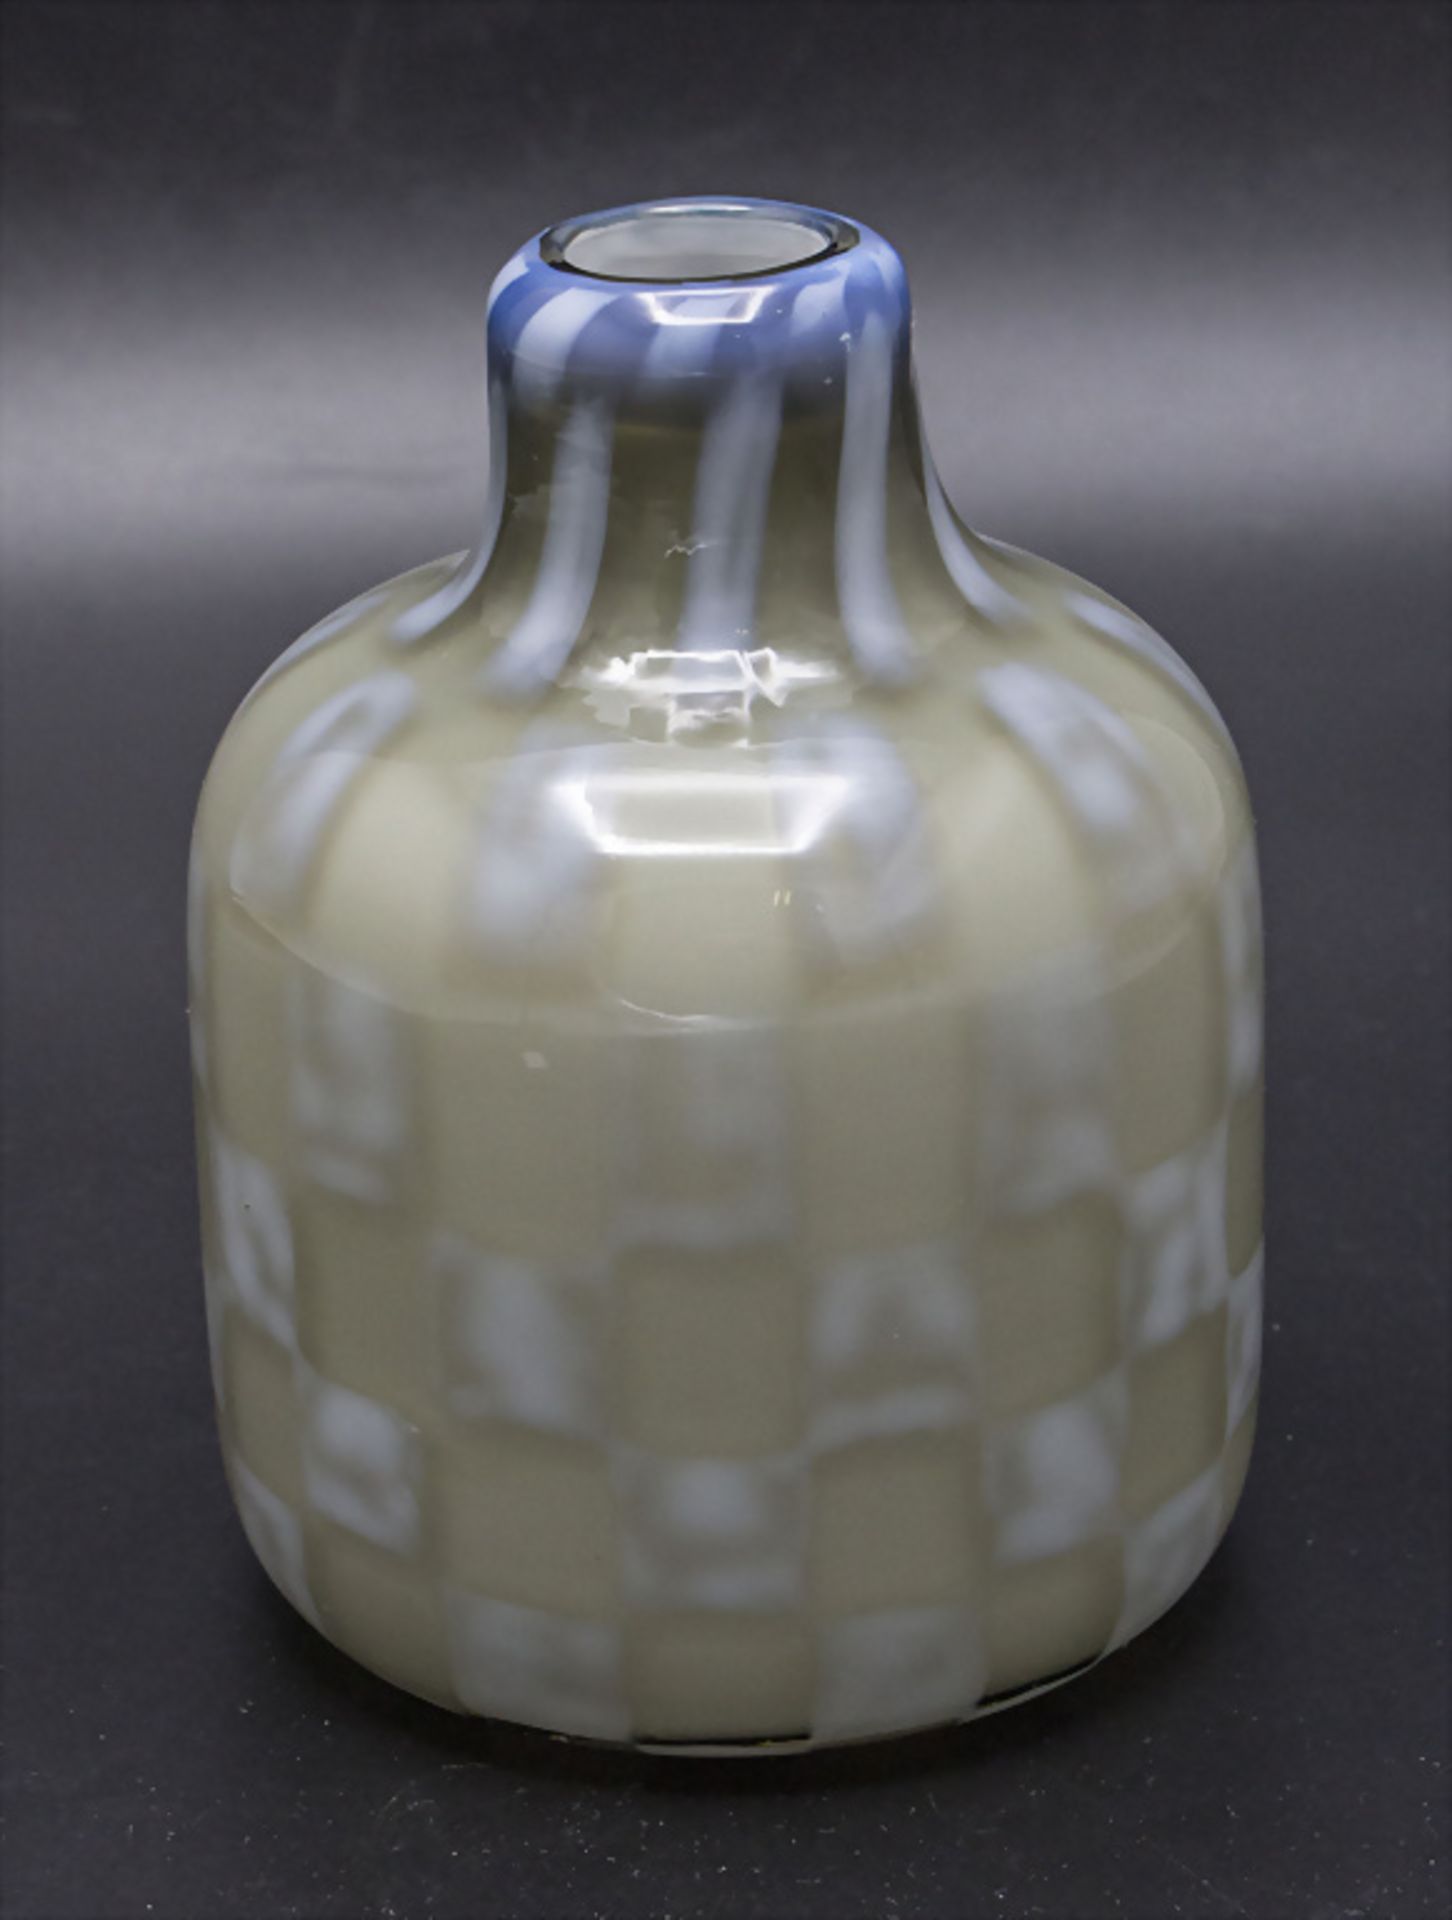 Vase / A glass vase, wohl Barovier und Toso, Murano, 70/80er Jahre